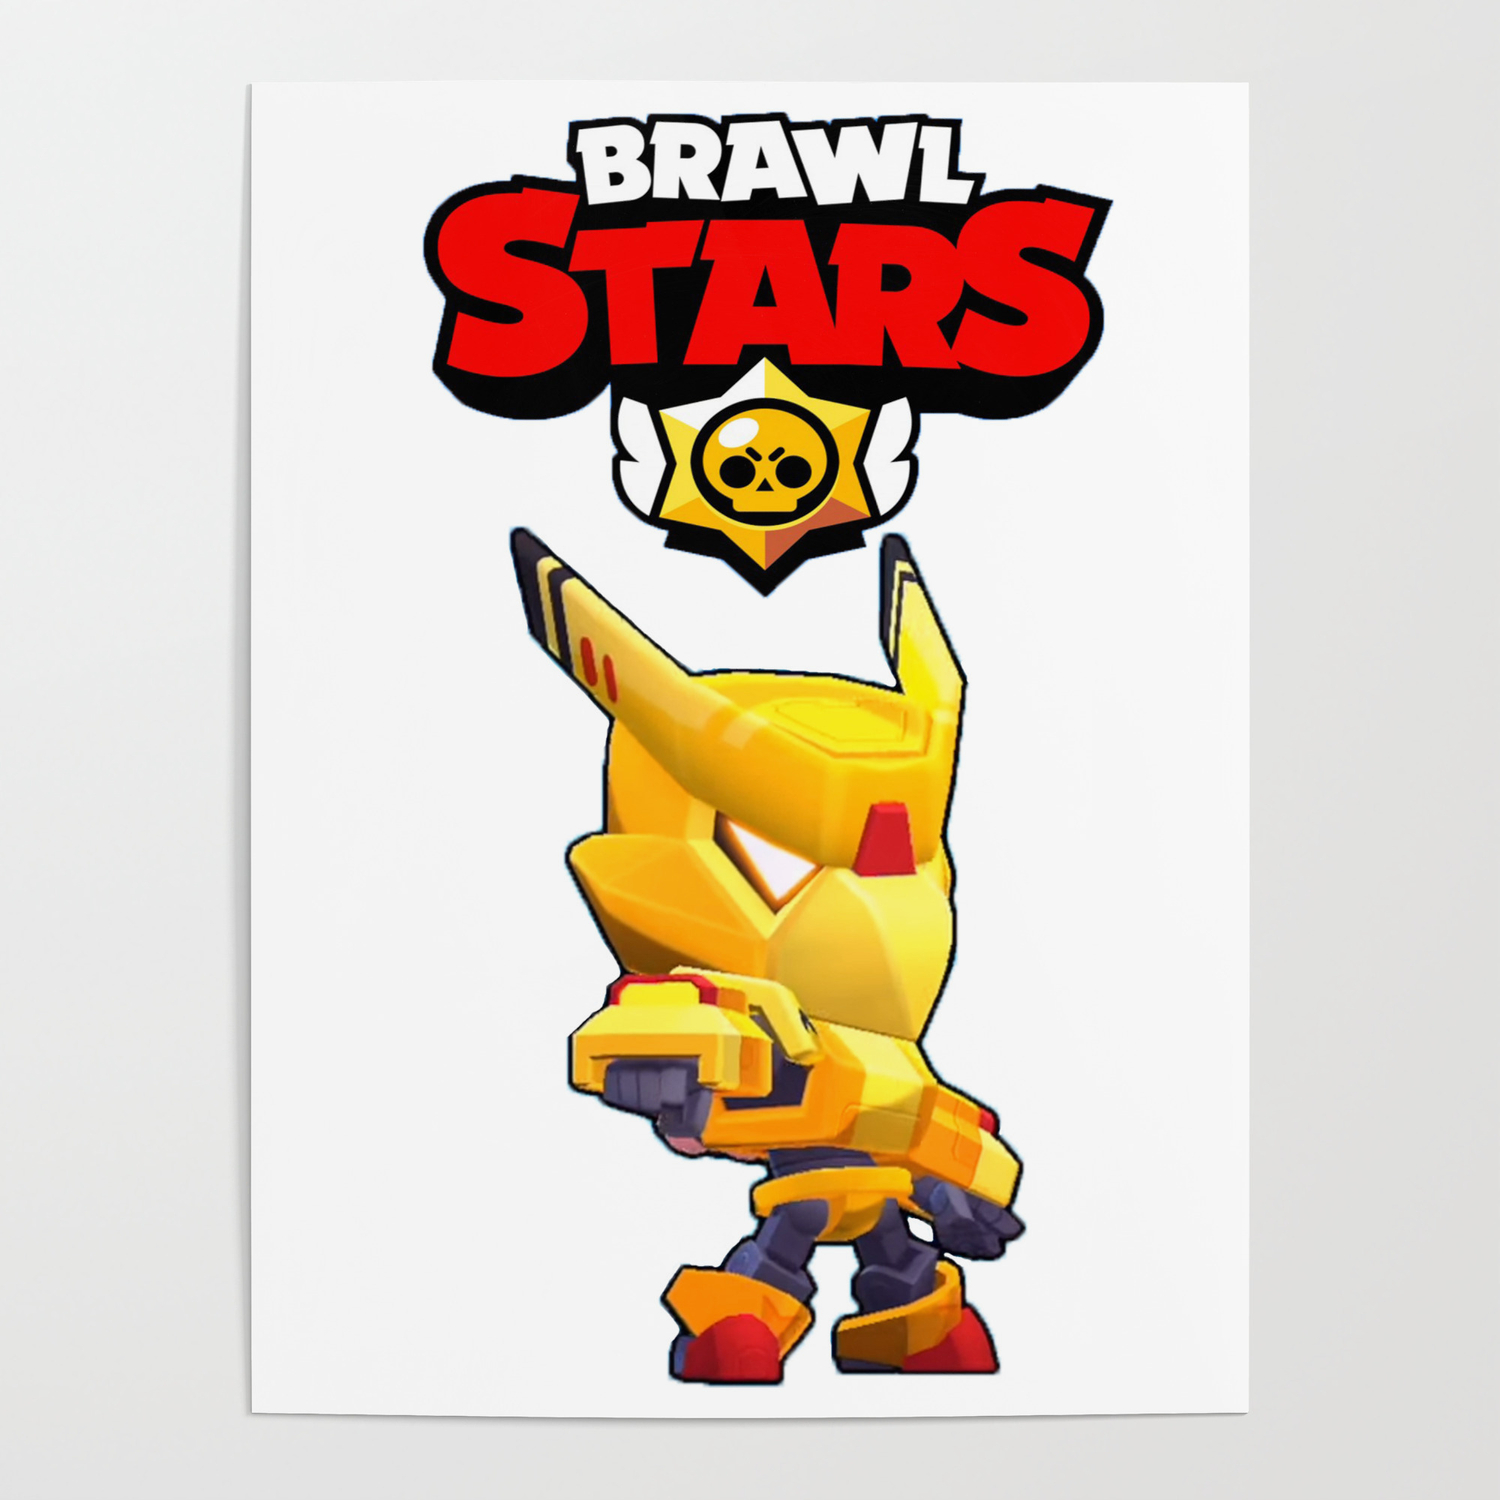 Gold Mecha Crow Design Brawl Stars Poster By Zarcus11 Society6 - pop art brawl star